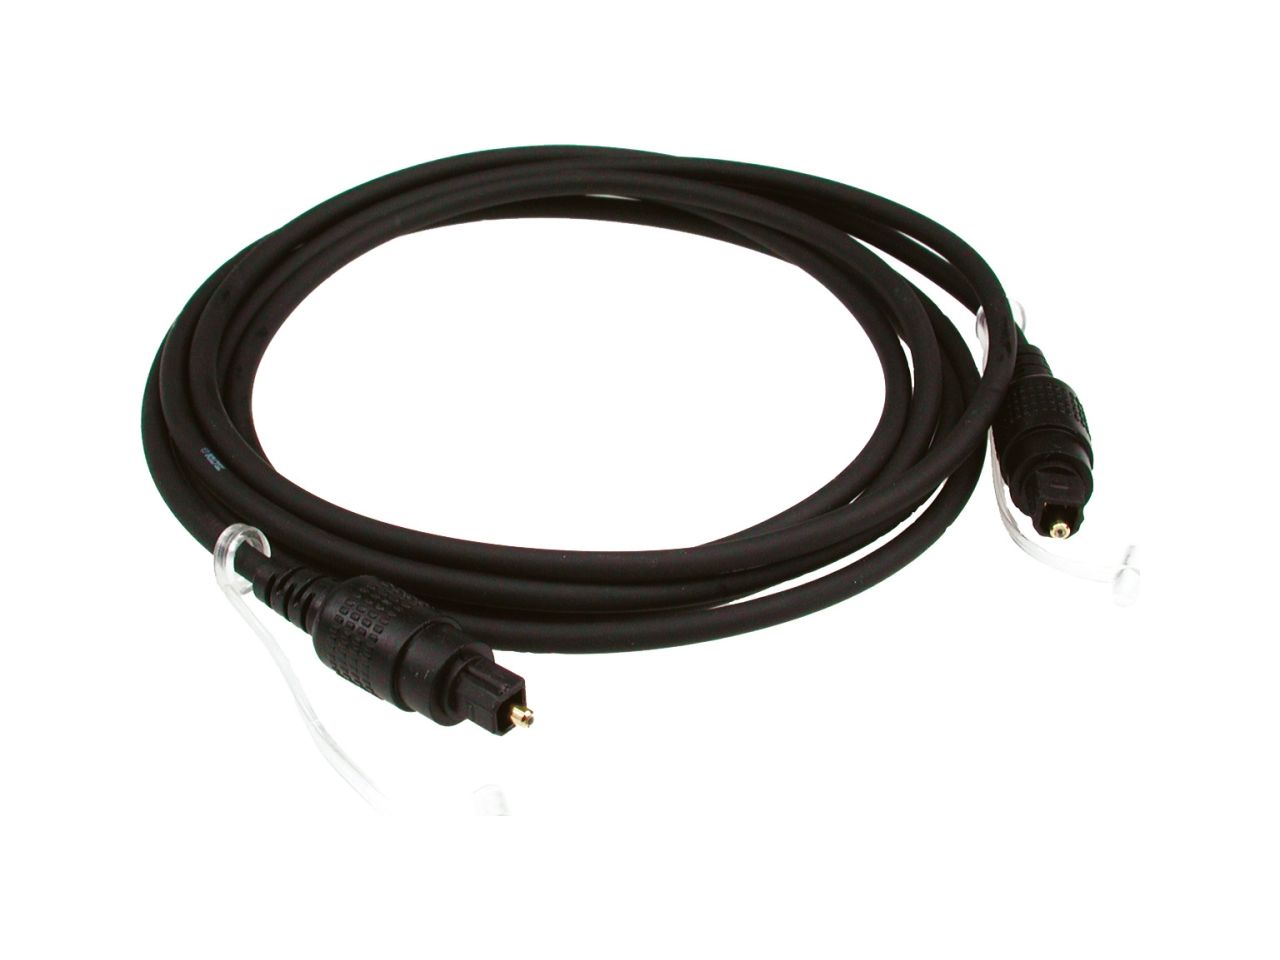 Pro-line Digital Cable